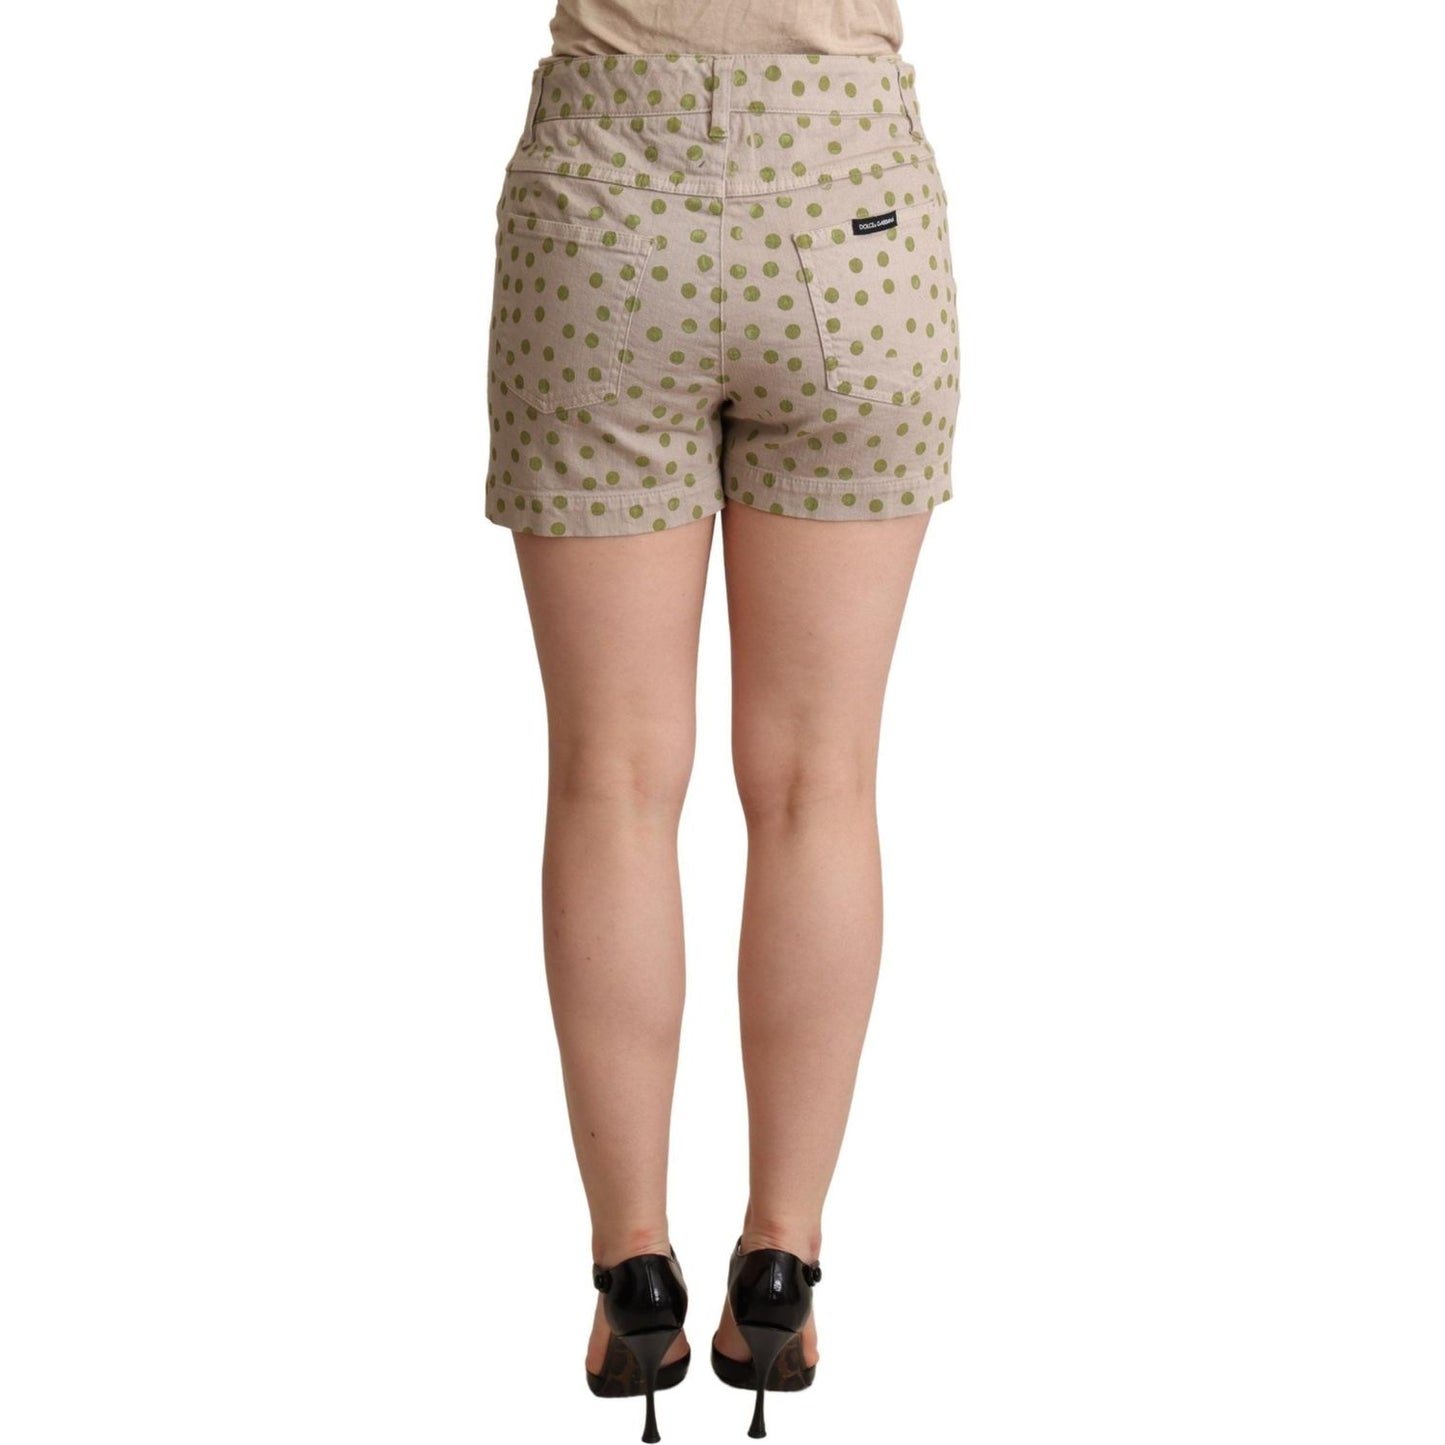 Dolce & Gabbana Chic Polka Dot Cotton Stretch Shorts Shorts beige-polka-dots-denim-cotton-stretch-shorts